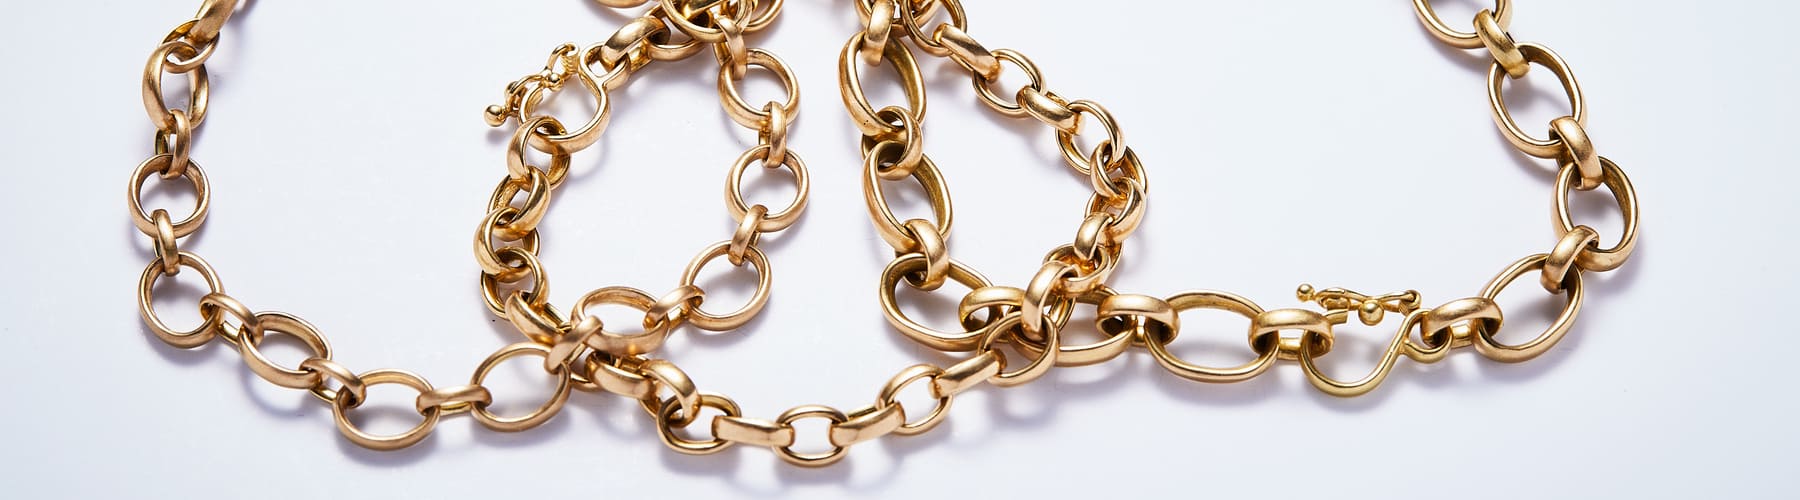 Bracelets Chains